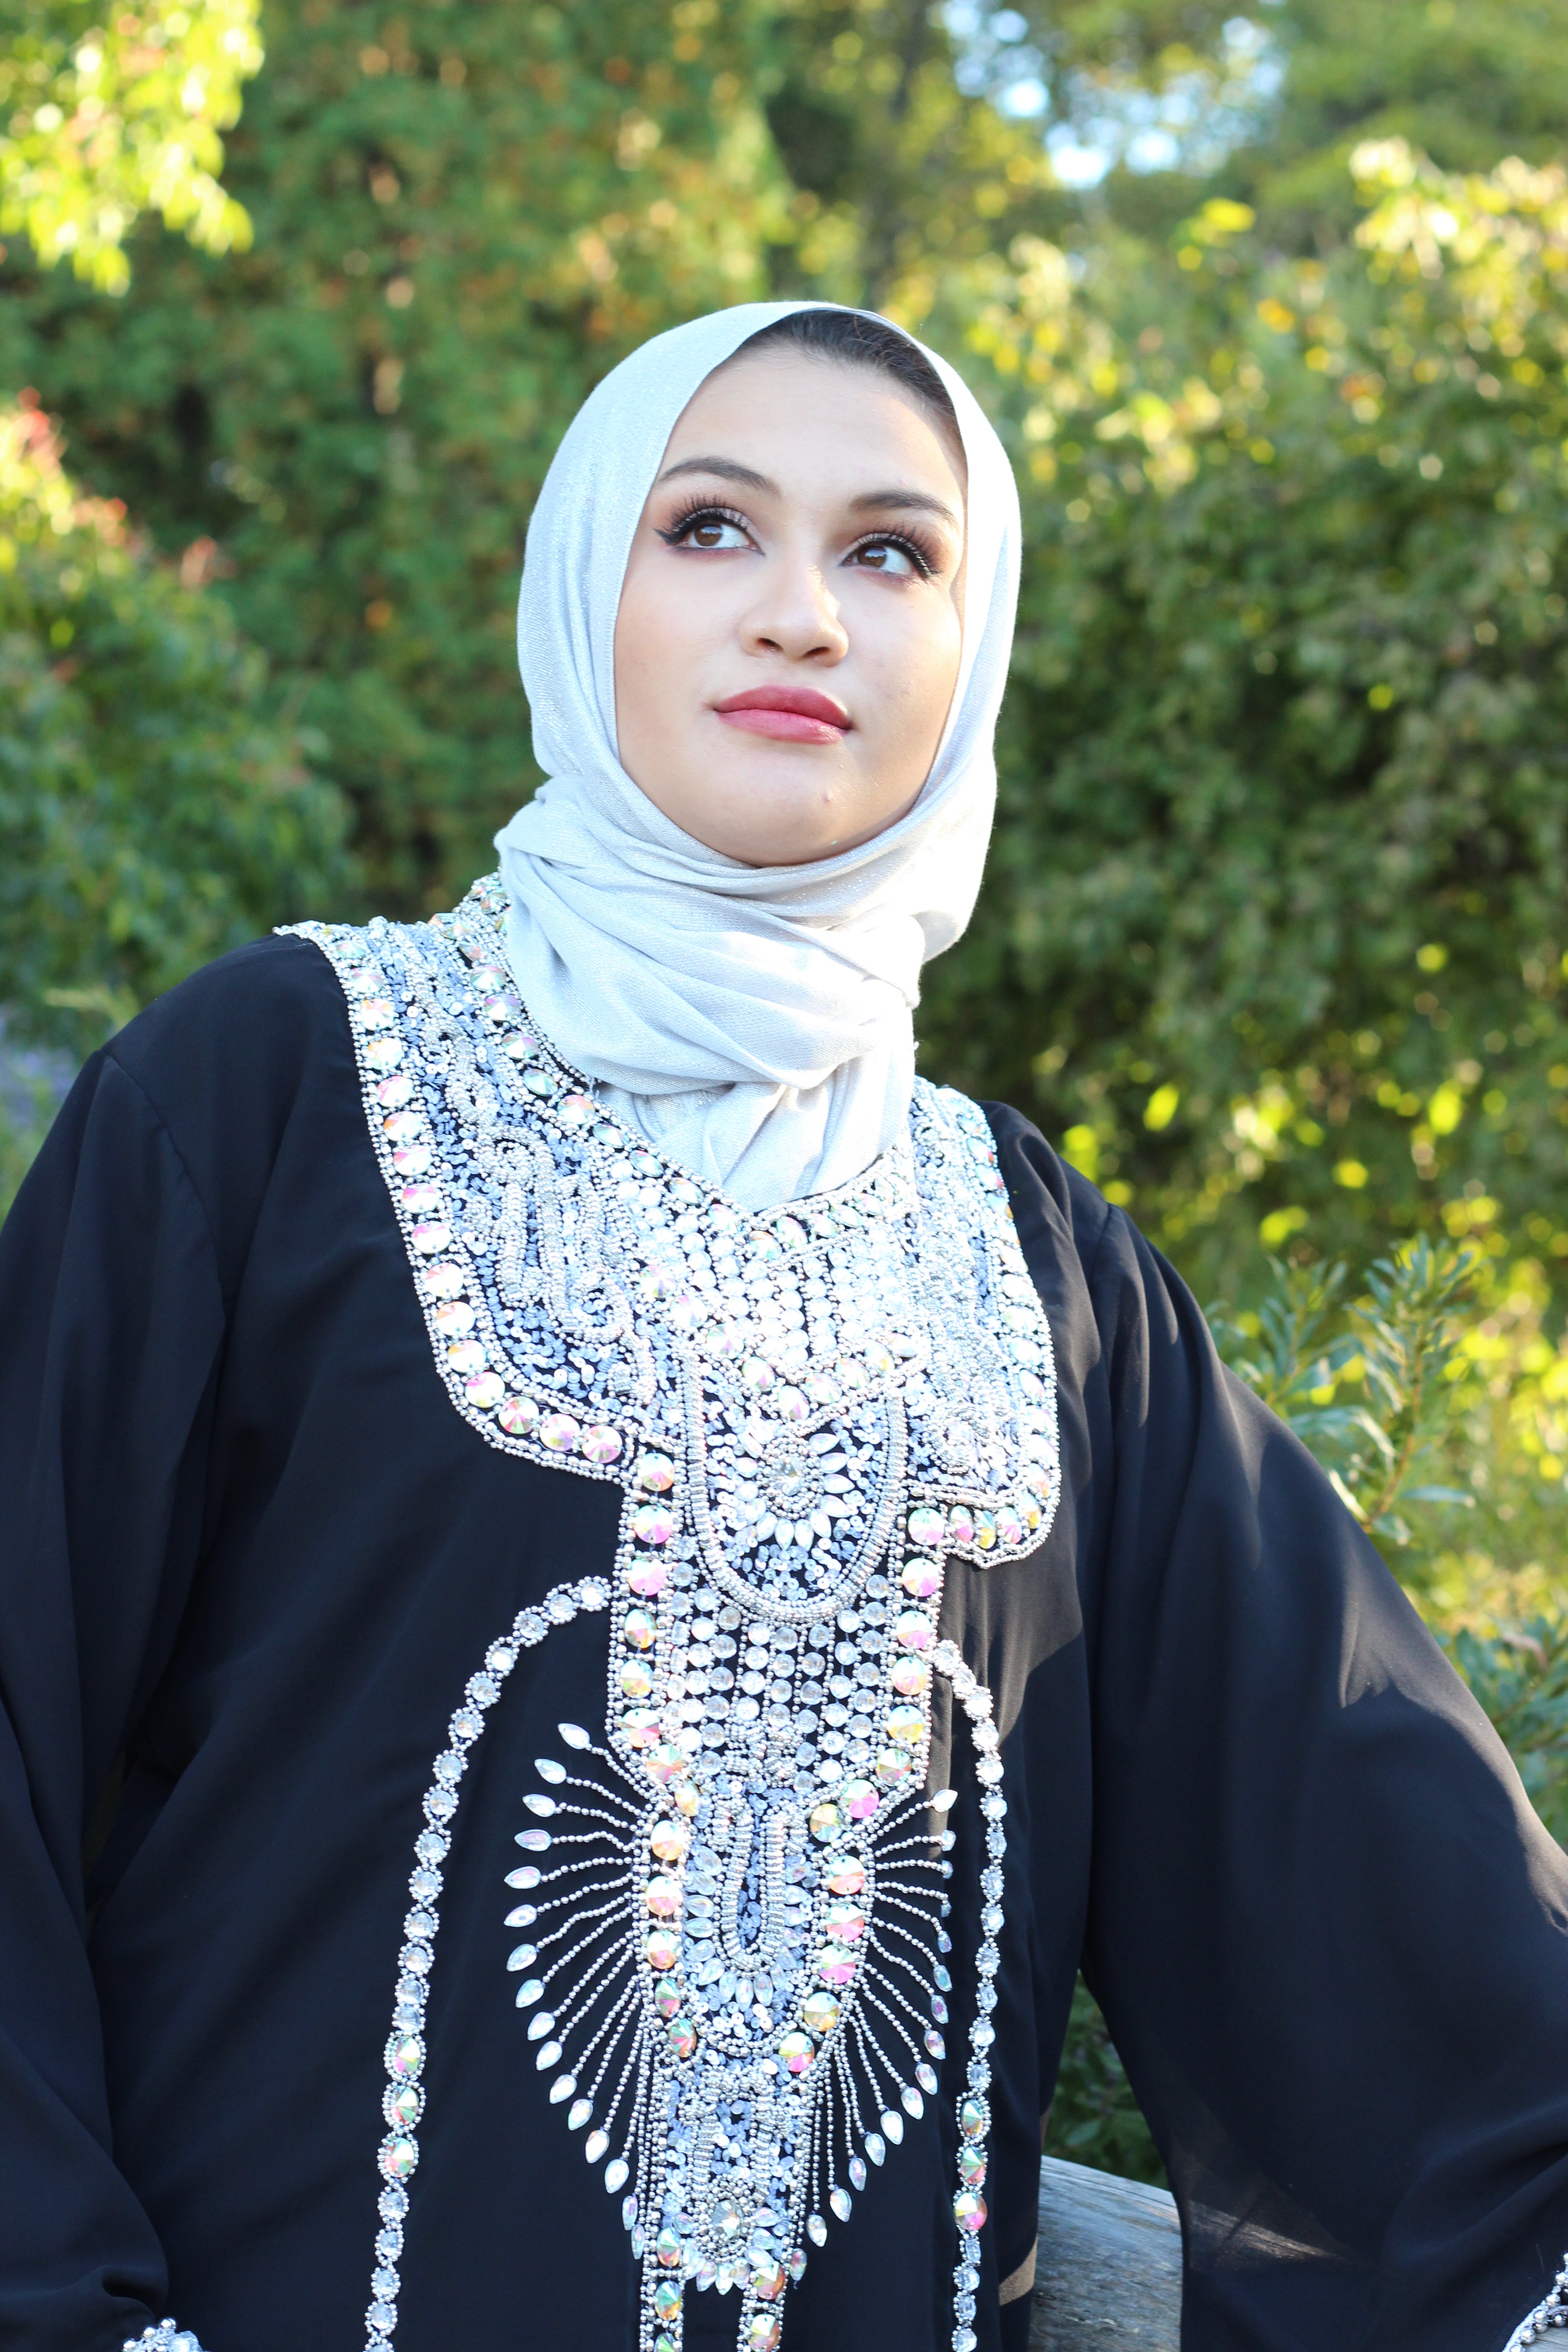 Zoya Fancy Abaya/Dress